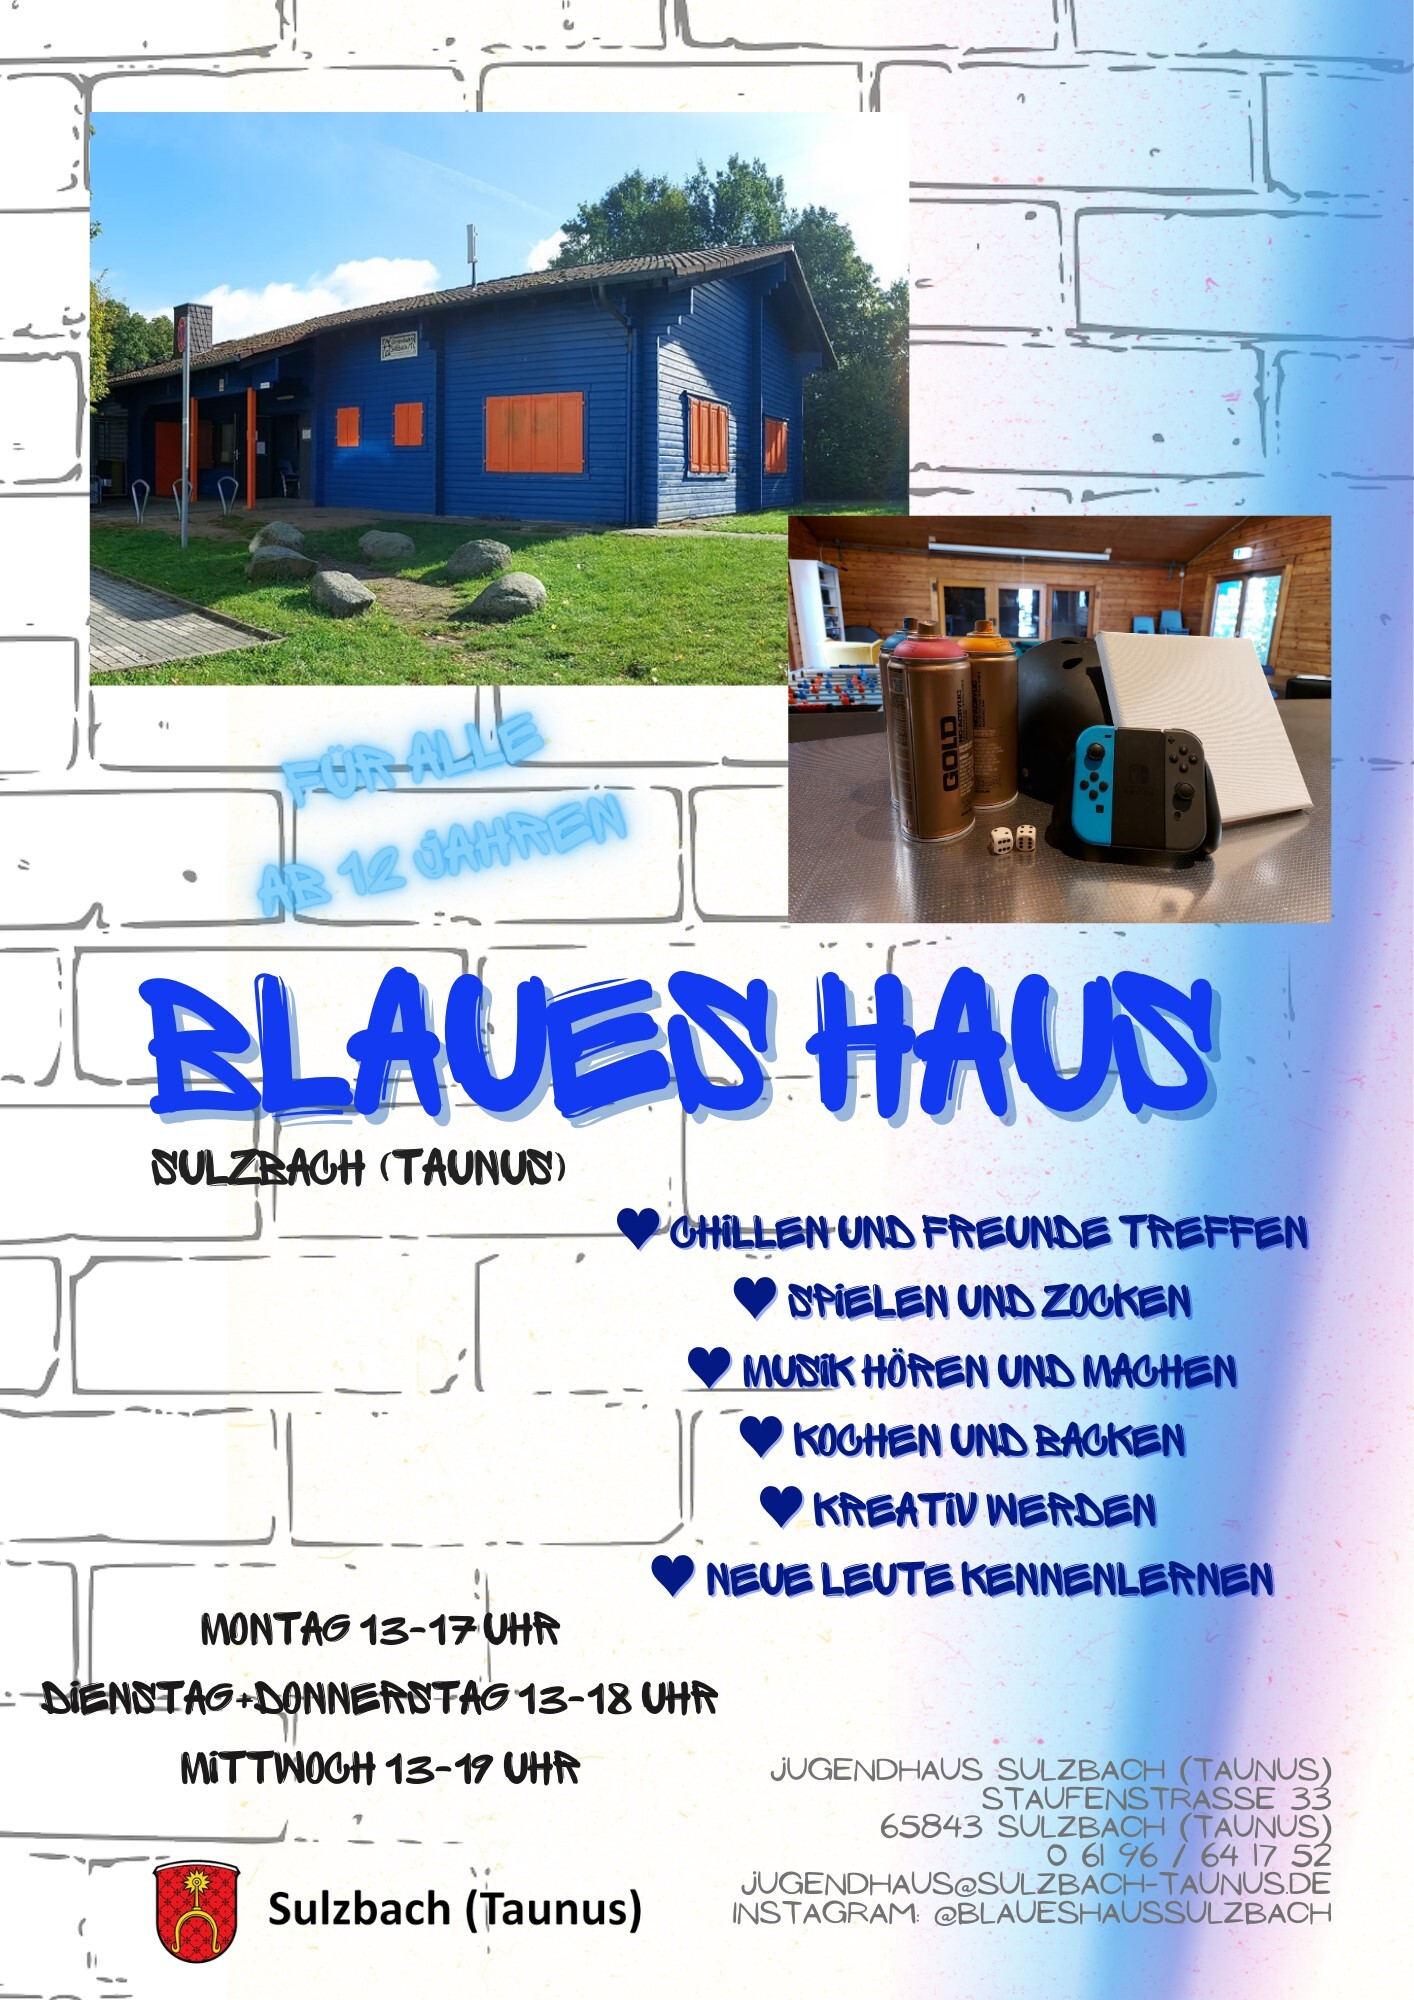 Blaues Haus6 002